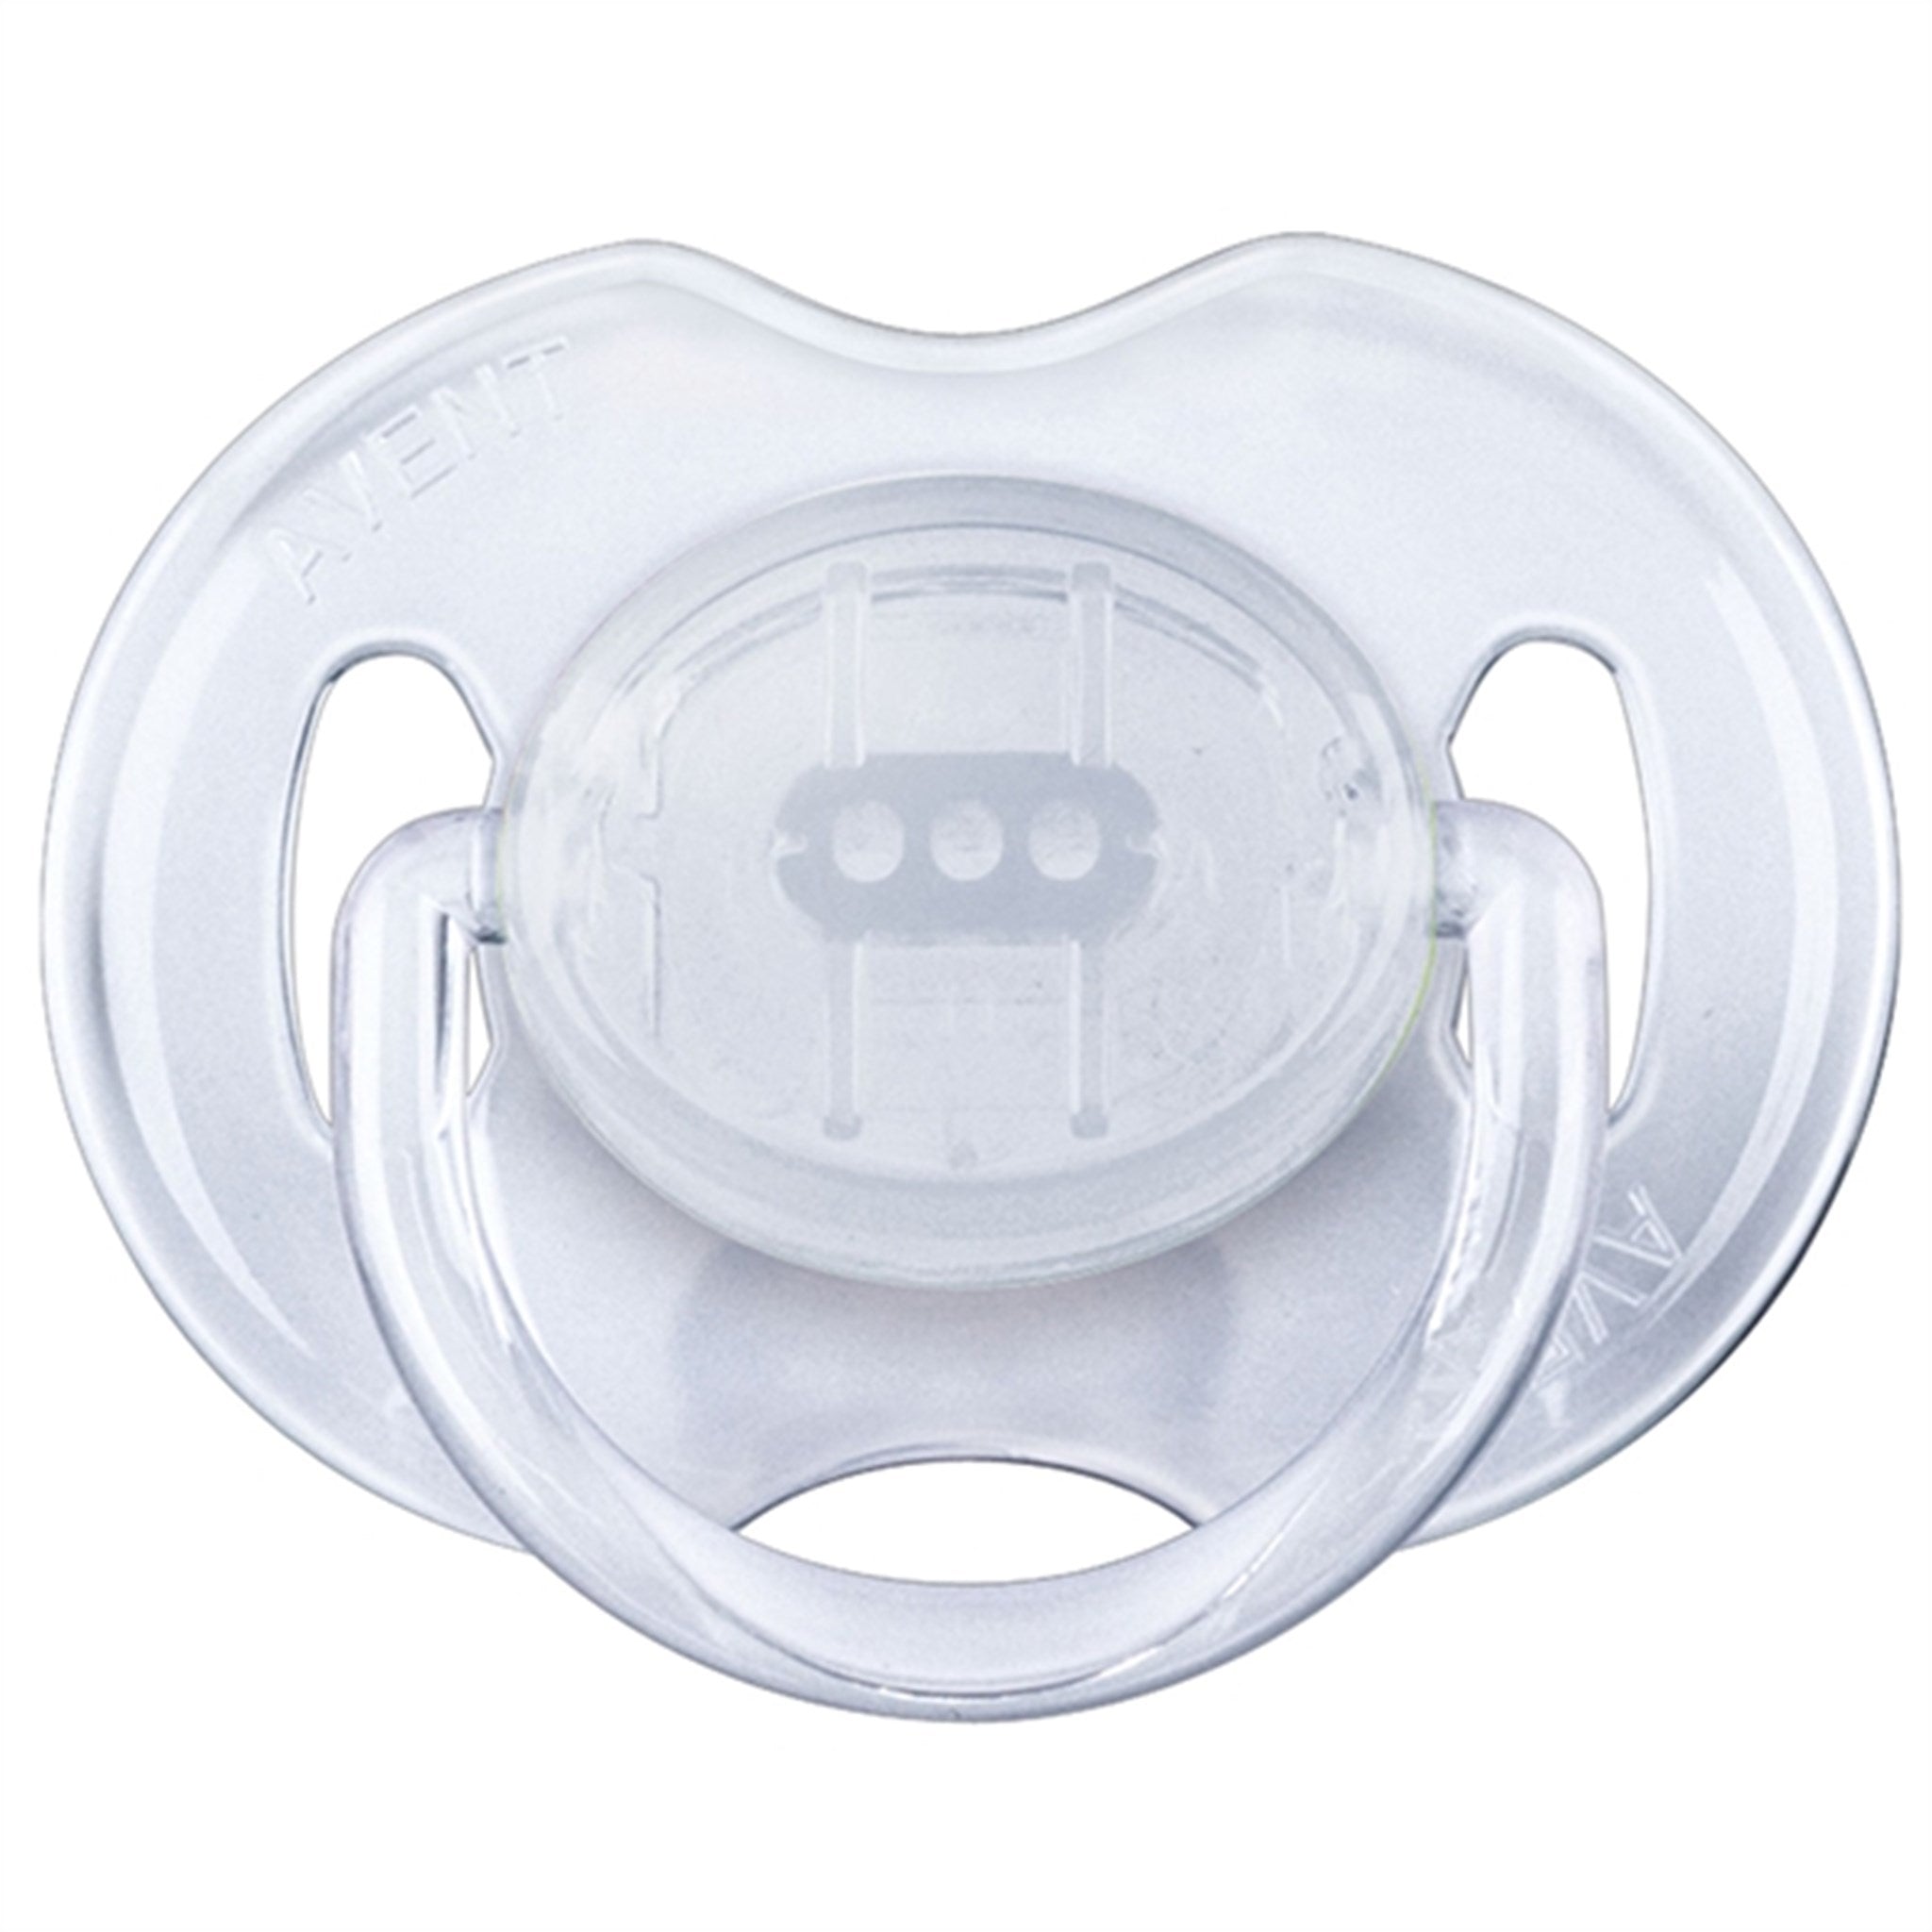 Philips Avent Natural Starter Kit for Newborns 4